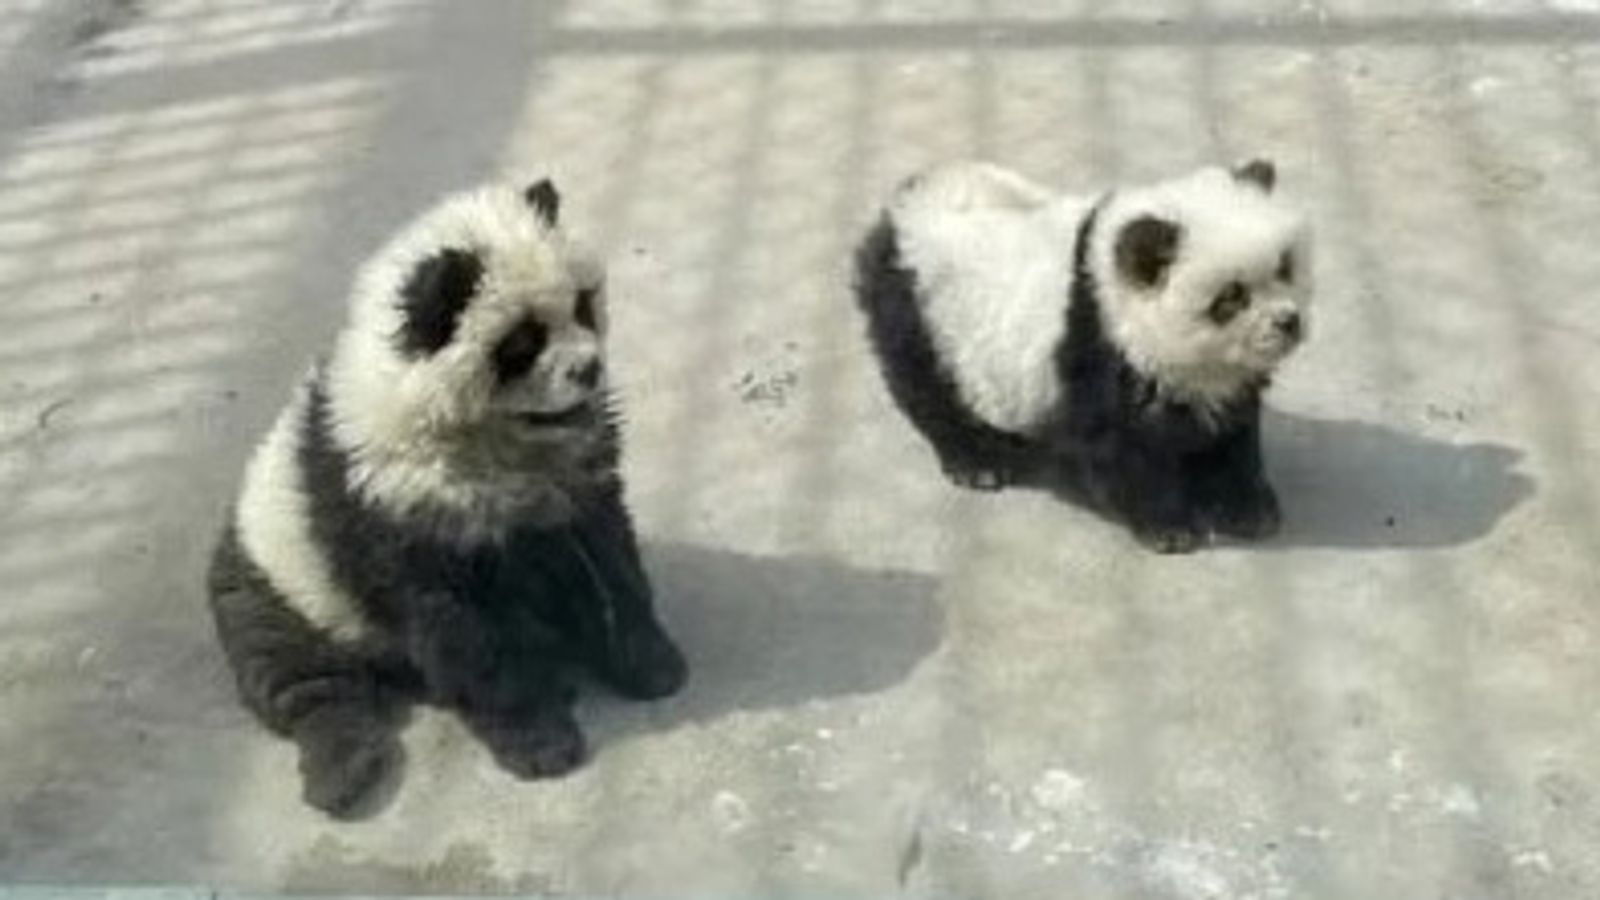 Chinesischer Zoo unter Beschuss, nachdem Hunde für Panda-Ausstellung schwarz und weiß gefärbt wurden |  Weltnachrichten